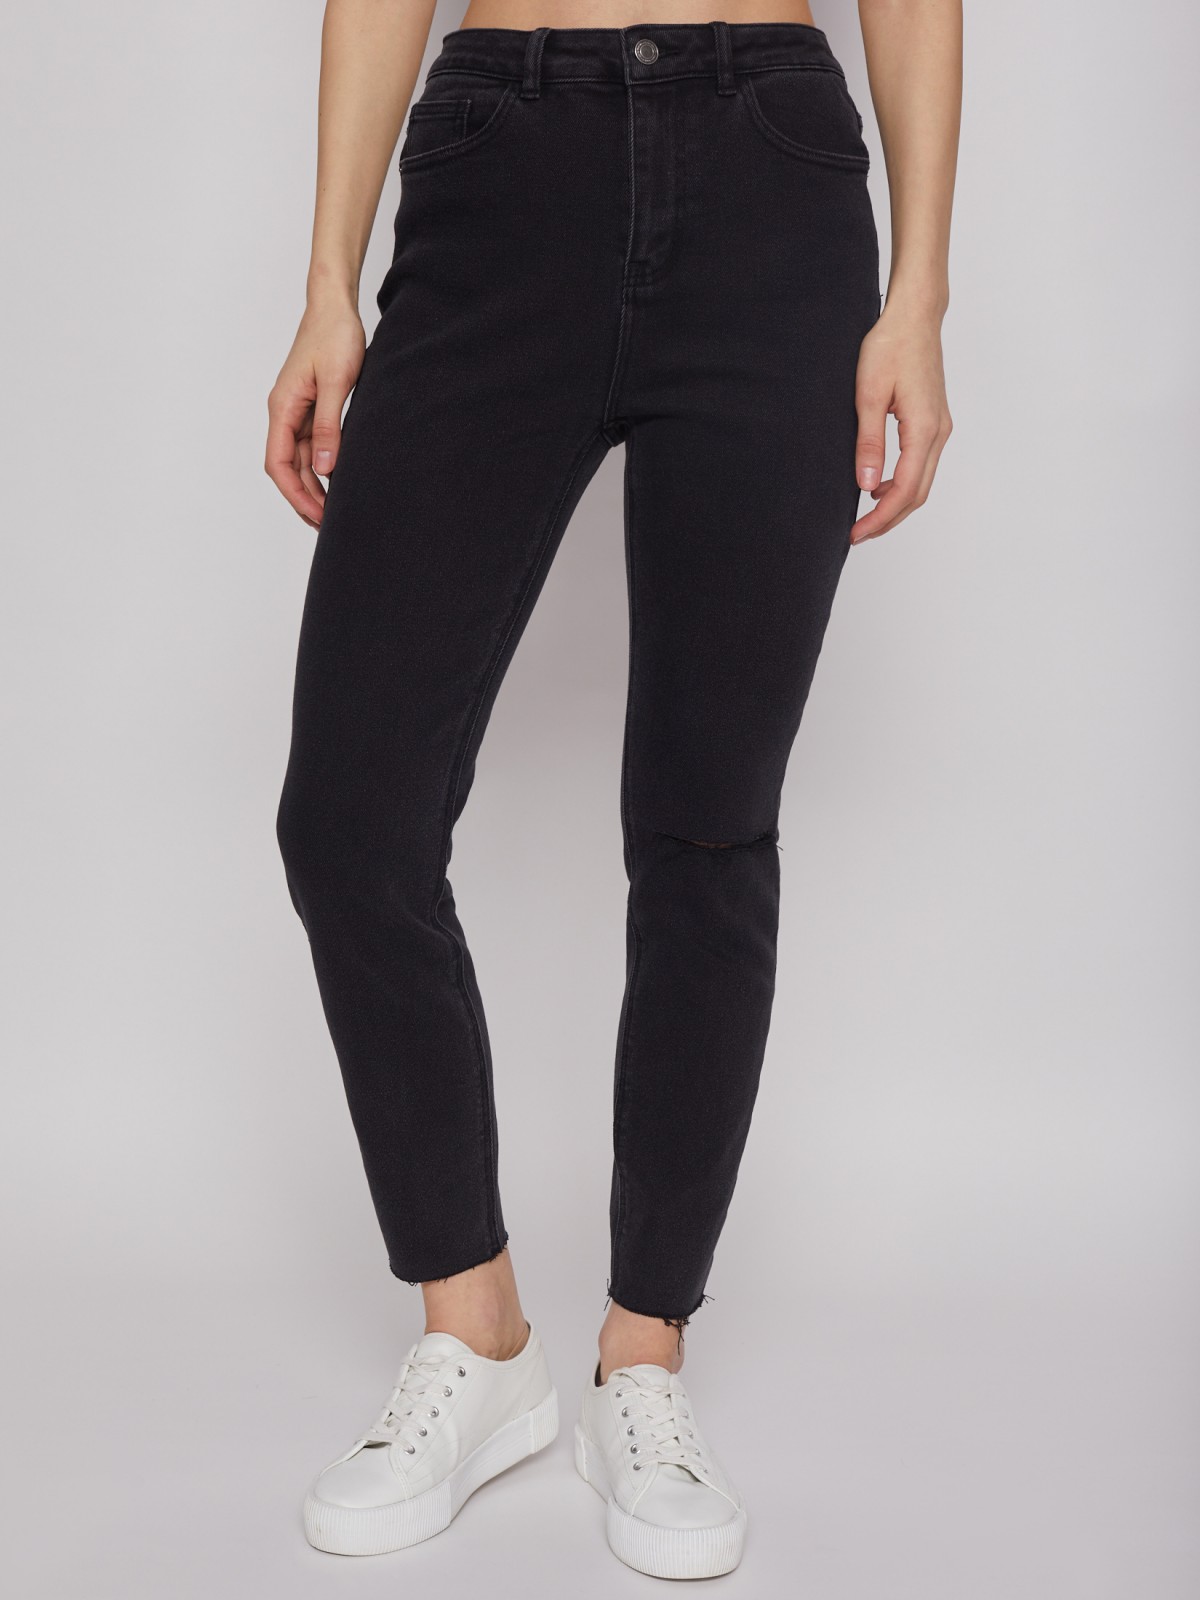 Брюки джинсовые zolla 22221711S043, цвет черный, размер 25 - фото 3